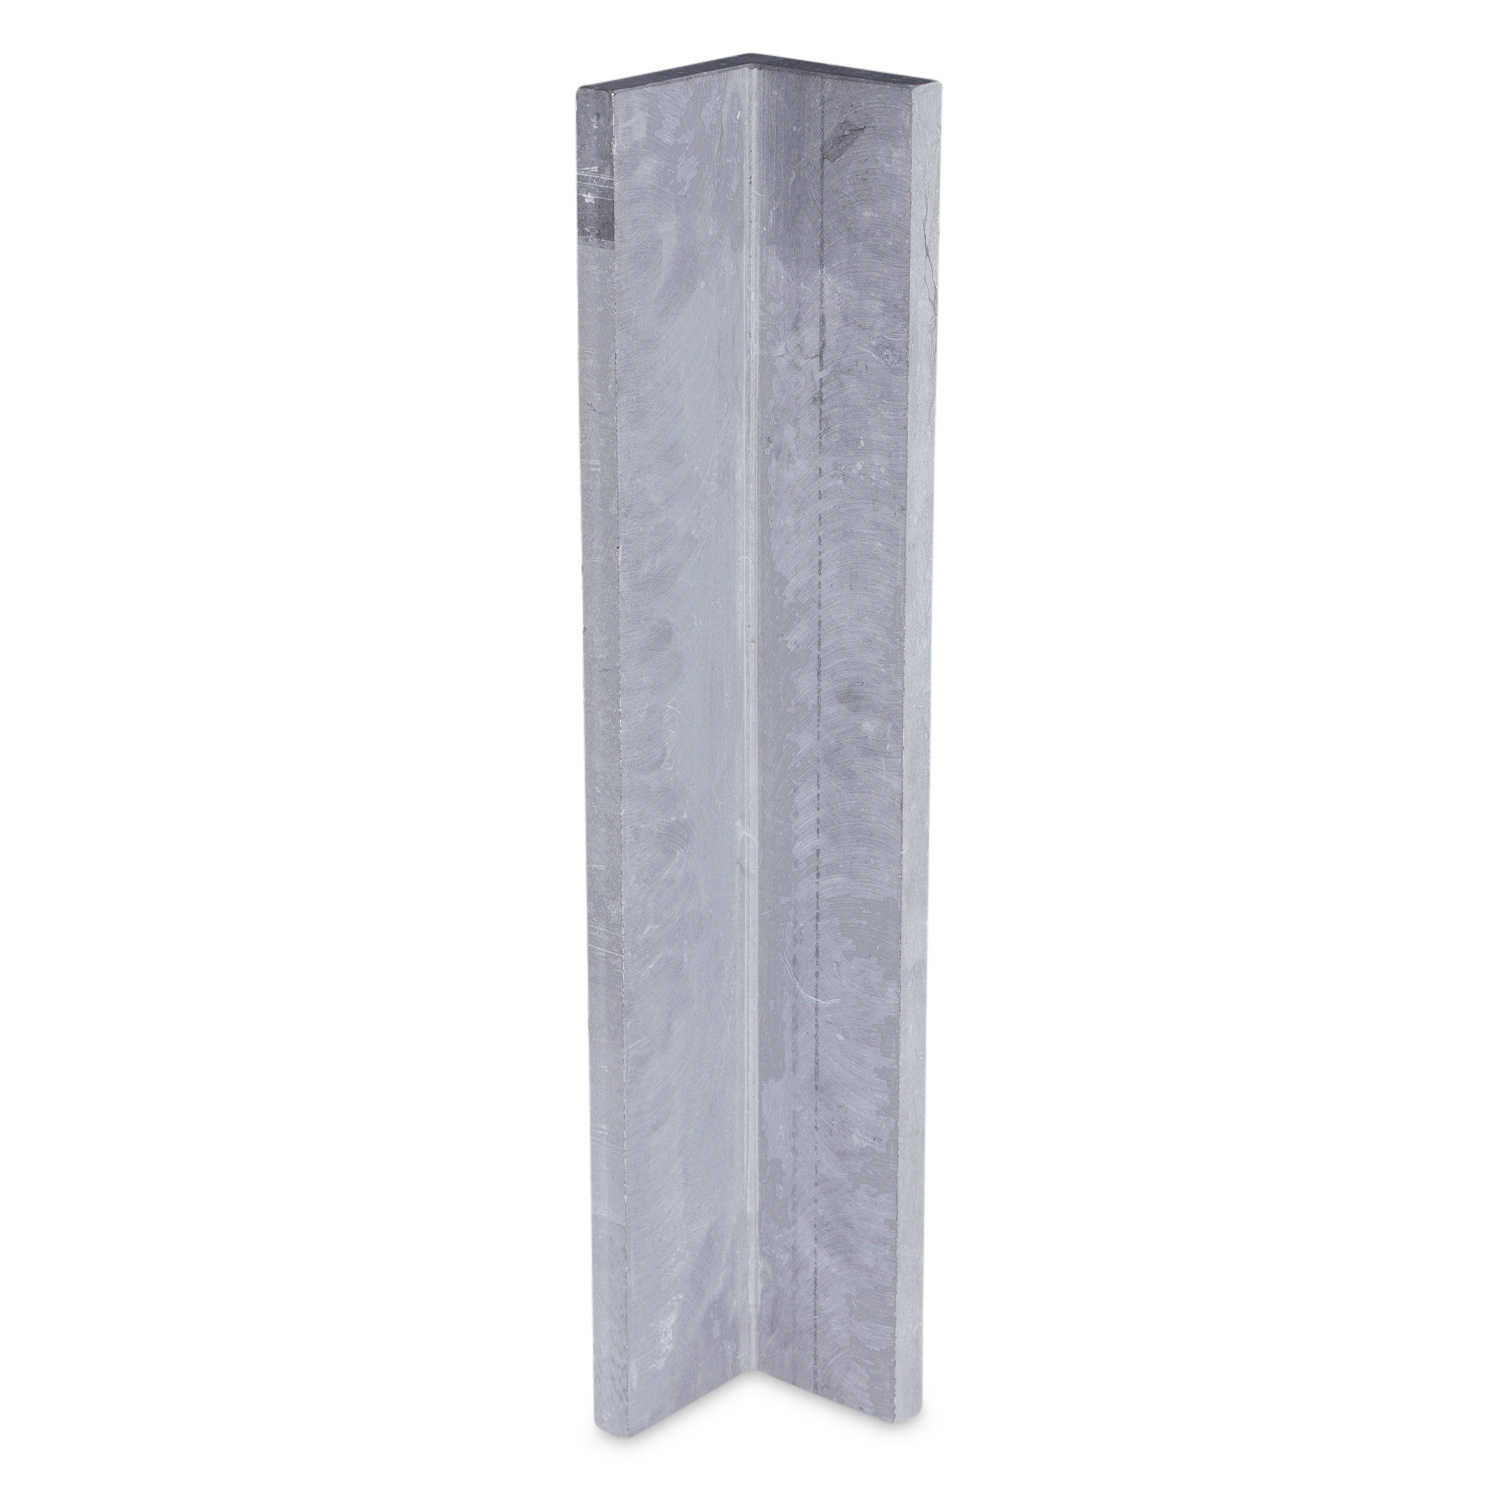  Gevelplint hoek - 10/10x2 cm - Binnenhoek & buitenhoek - Hoogte op maat - 30-80 cm - Belgisch hardsteen geschuurd